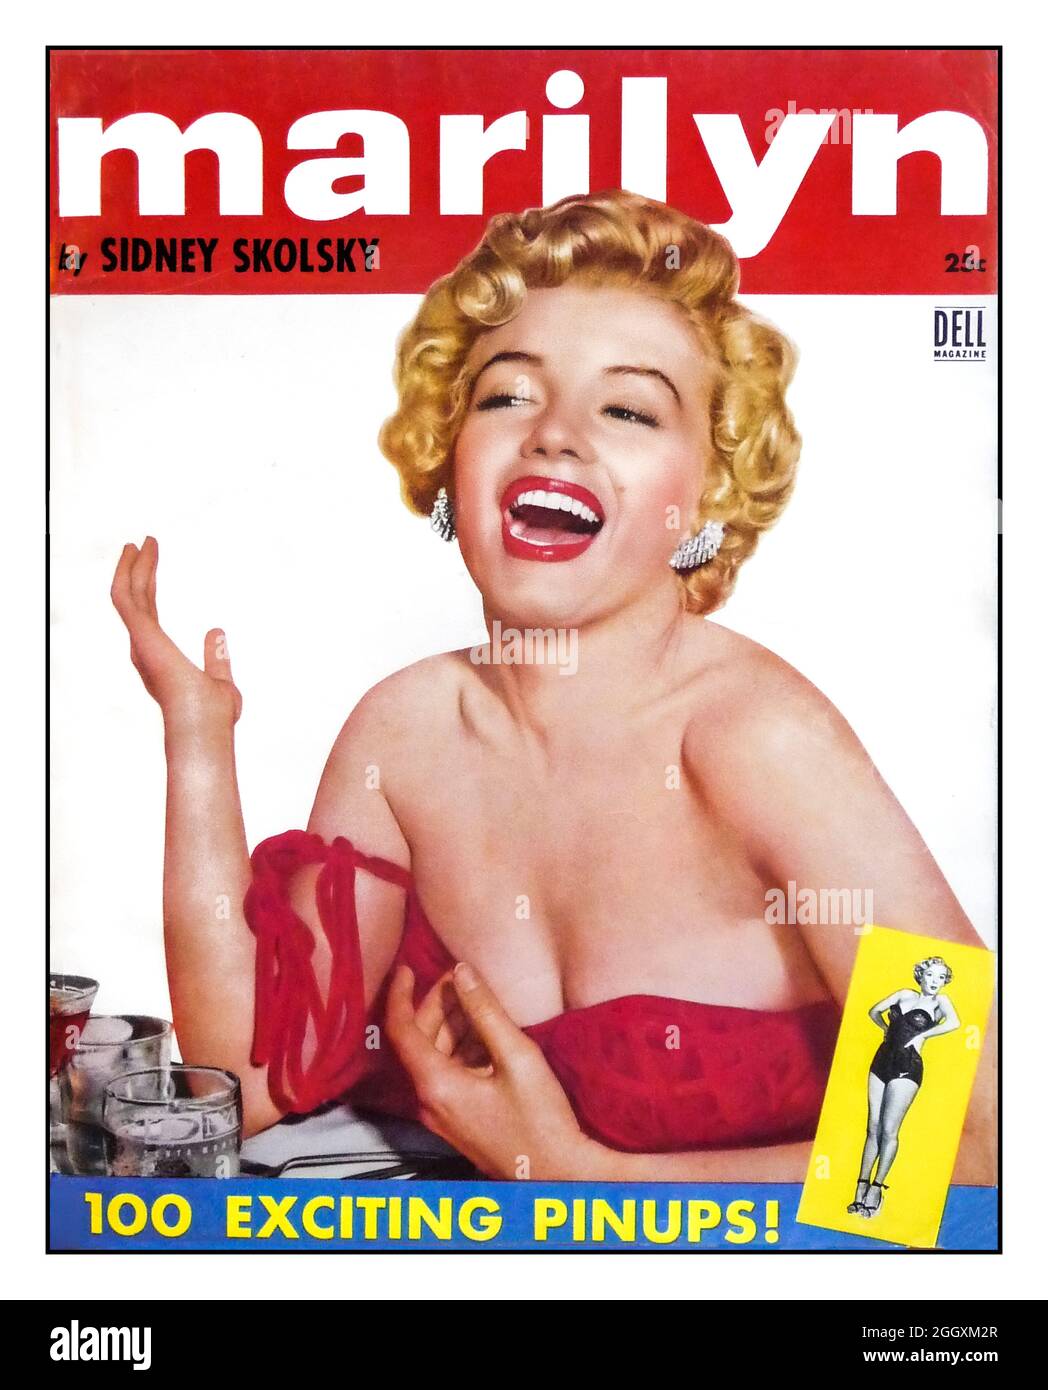 1950 Marilyn Monroe Front Cover 'MARILYN' Dell Magazine con 100 interessanti pinup ! Di Sidney Skolsky Magazine per gli appassionati di film e gli amanti dello scandalo e titillation pin up rivista Foto Stock